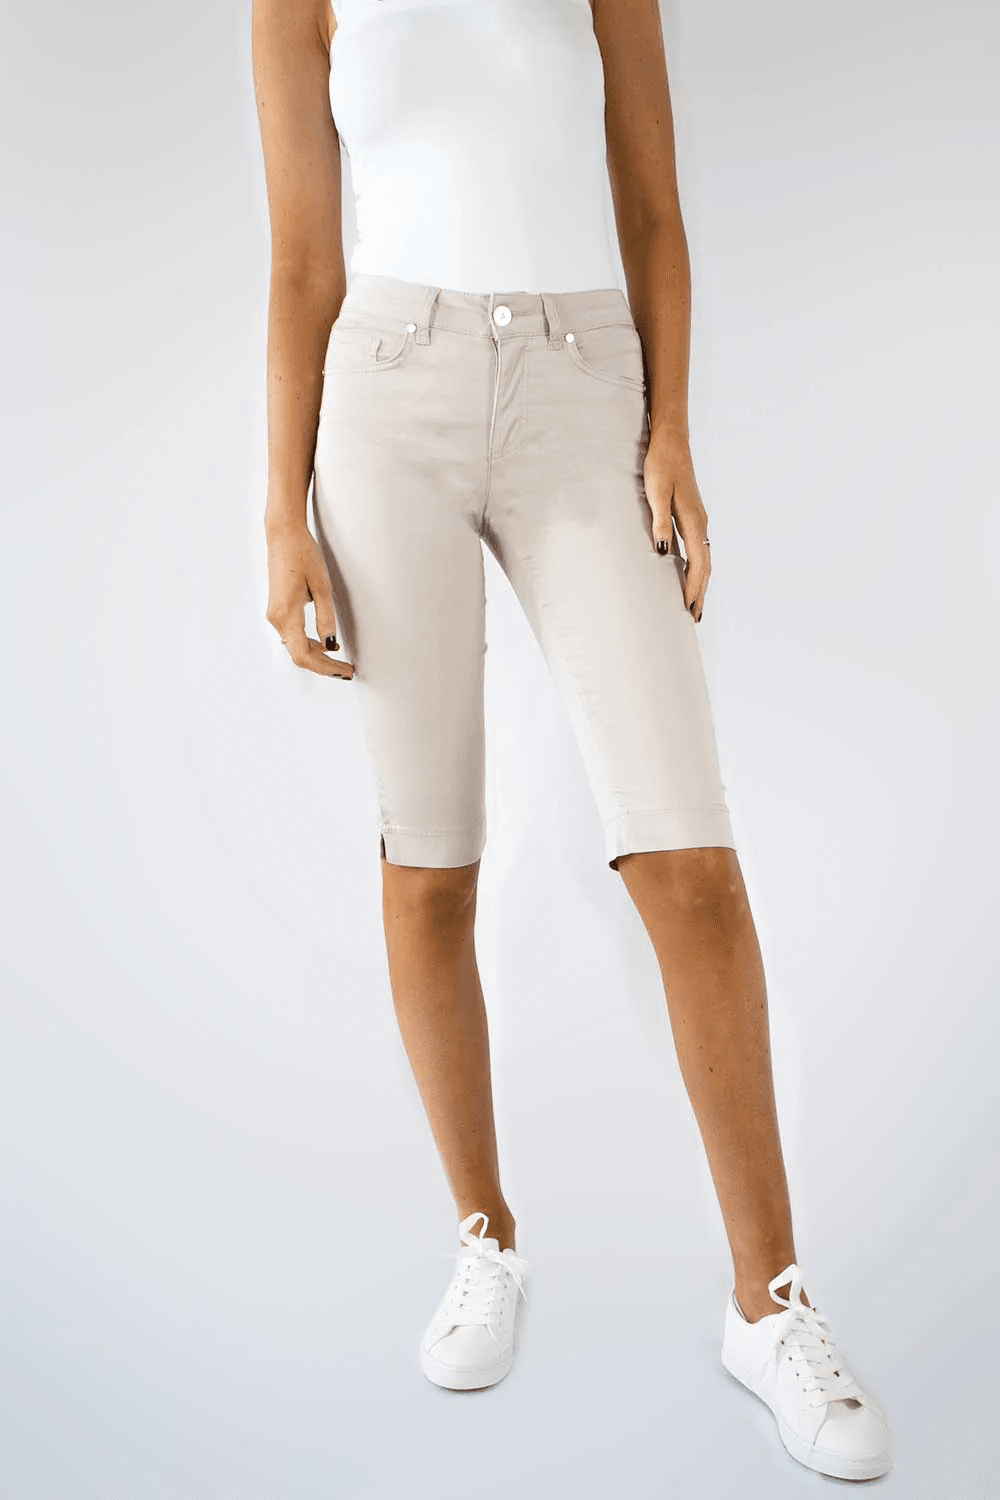 No2Moro Remi Shorts-8/36-Fi&Co Boutique